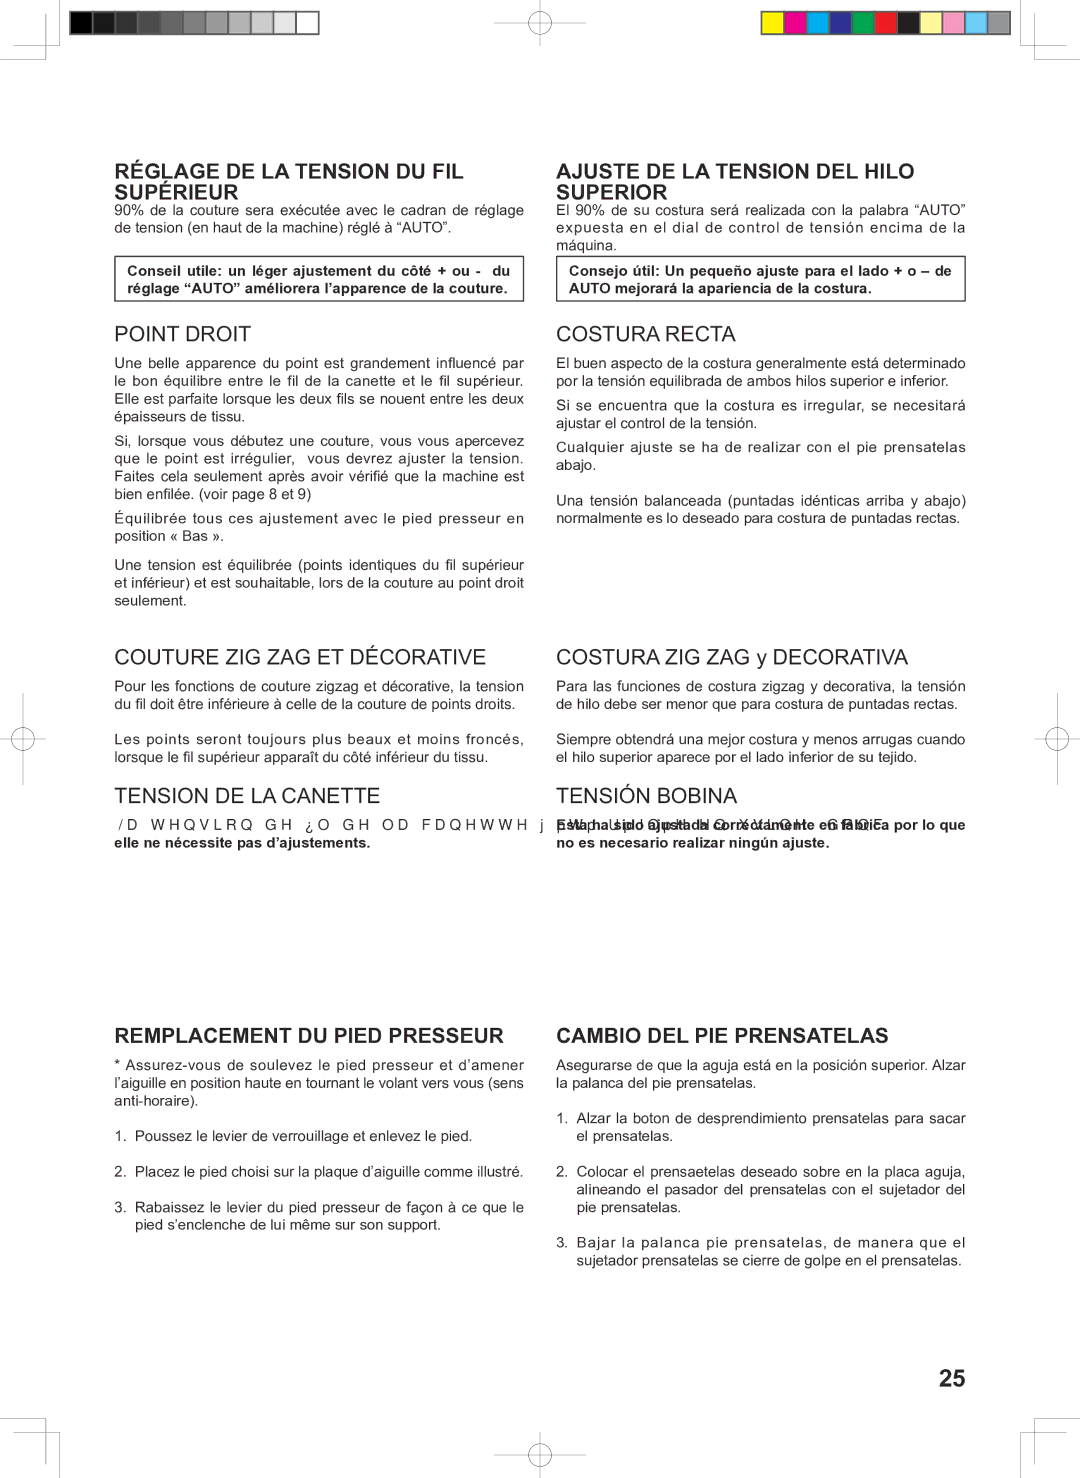 Singer 160 instruction manual Réglage DE LA Tension DU FIL Supérieur, Ajuste DE LA Tension DEL Hilo Superior 